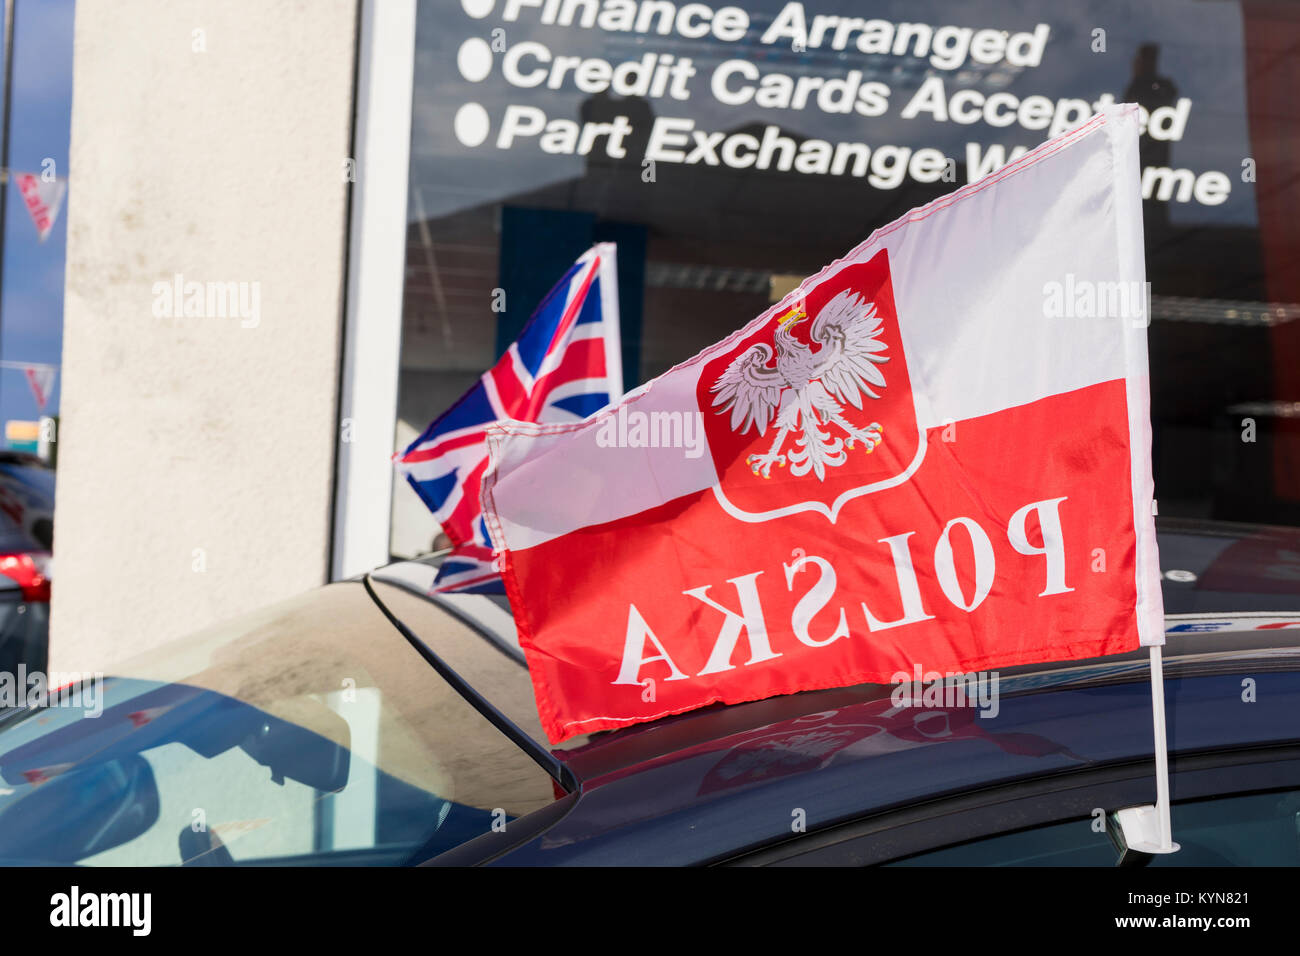 Drapeau polonais avec le mot 'Polska' écrit dessus en marche arrière et d'un Union Jack flag dans l'arrière-plan Banque D'Images